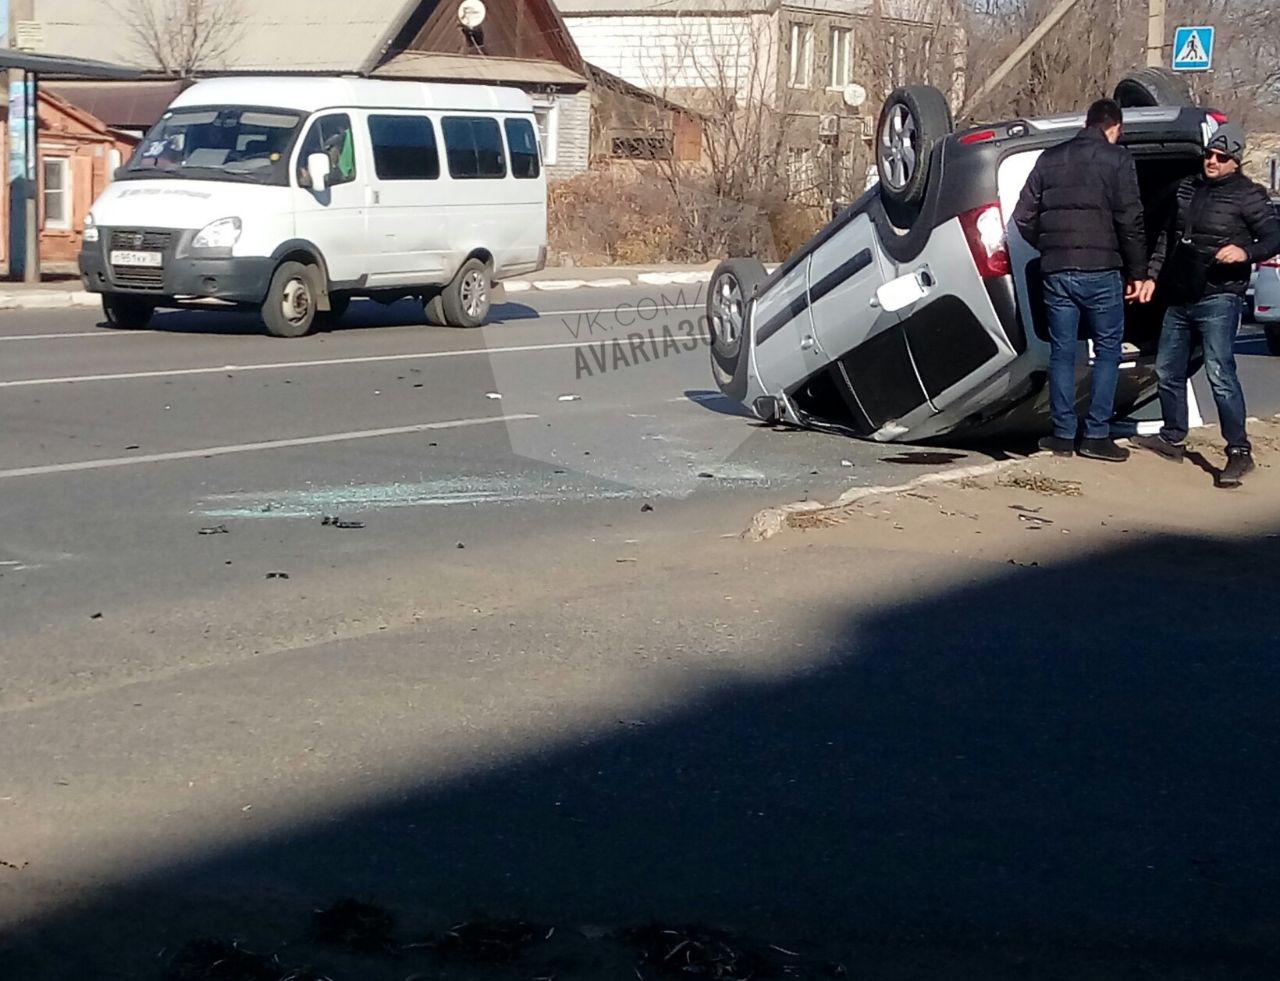 Что случилось сегодня в астрахани. Происшествия Астрахань 11.05. Происшествие в Астрахани сегодня. ДТП В Астрахани сегодня в Трусовском районе.